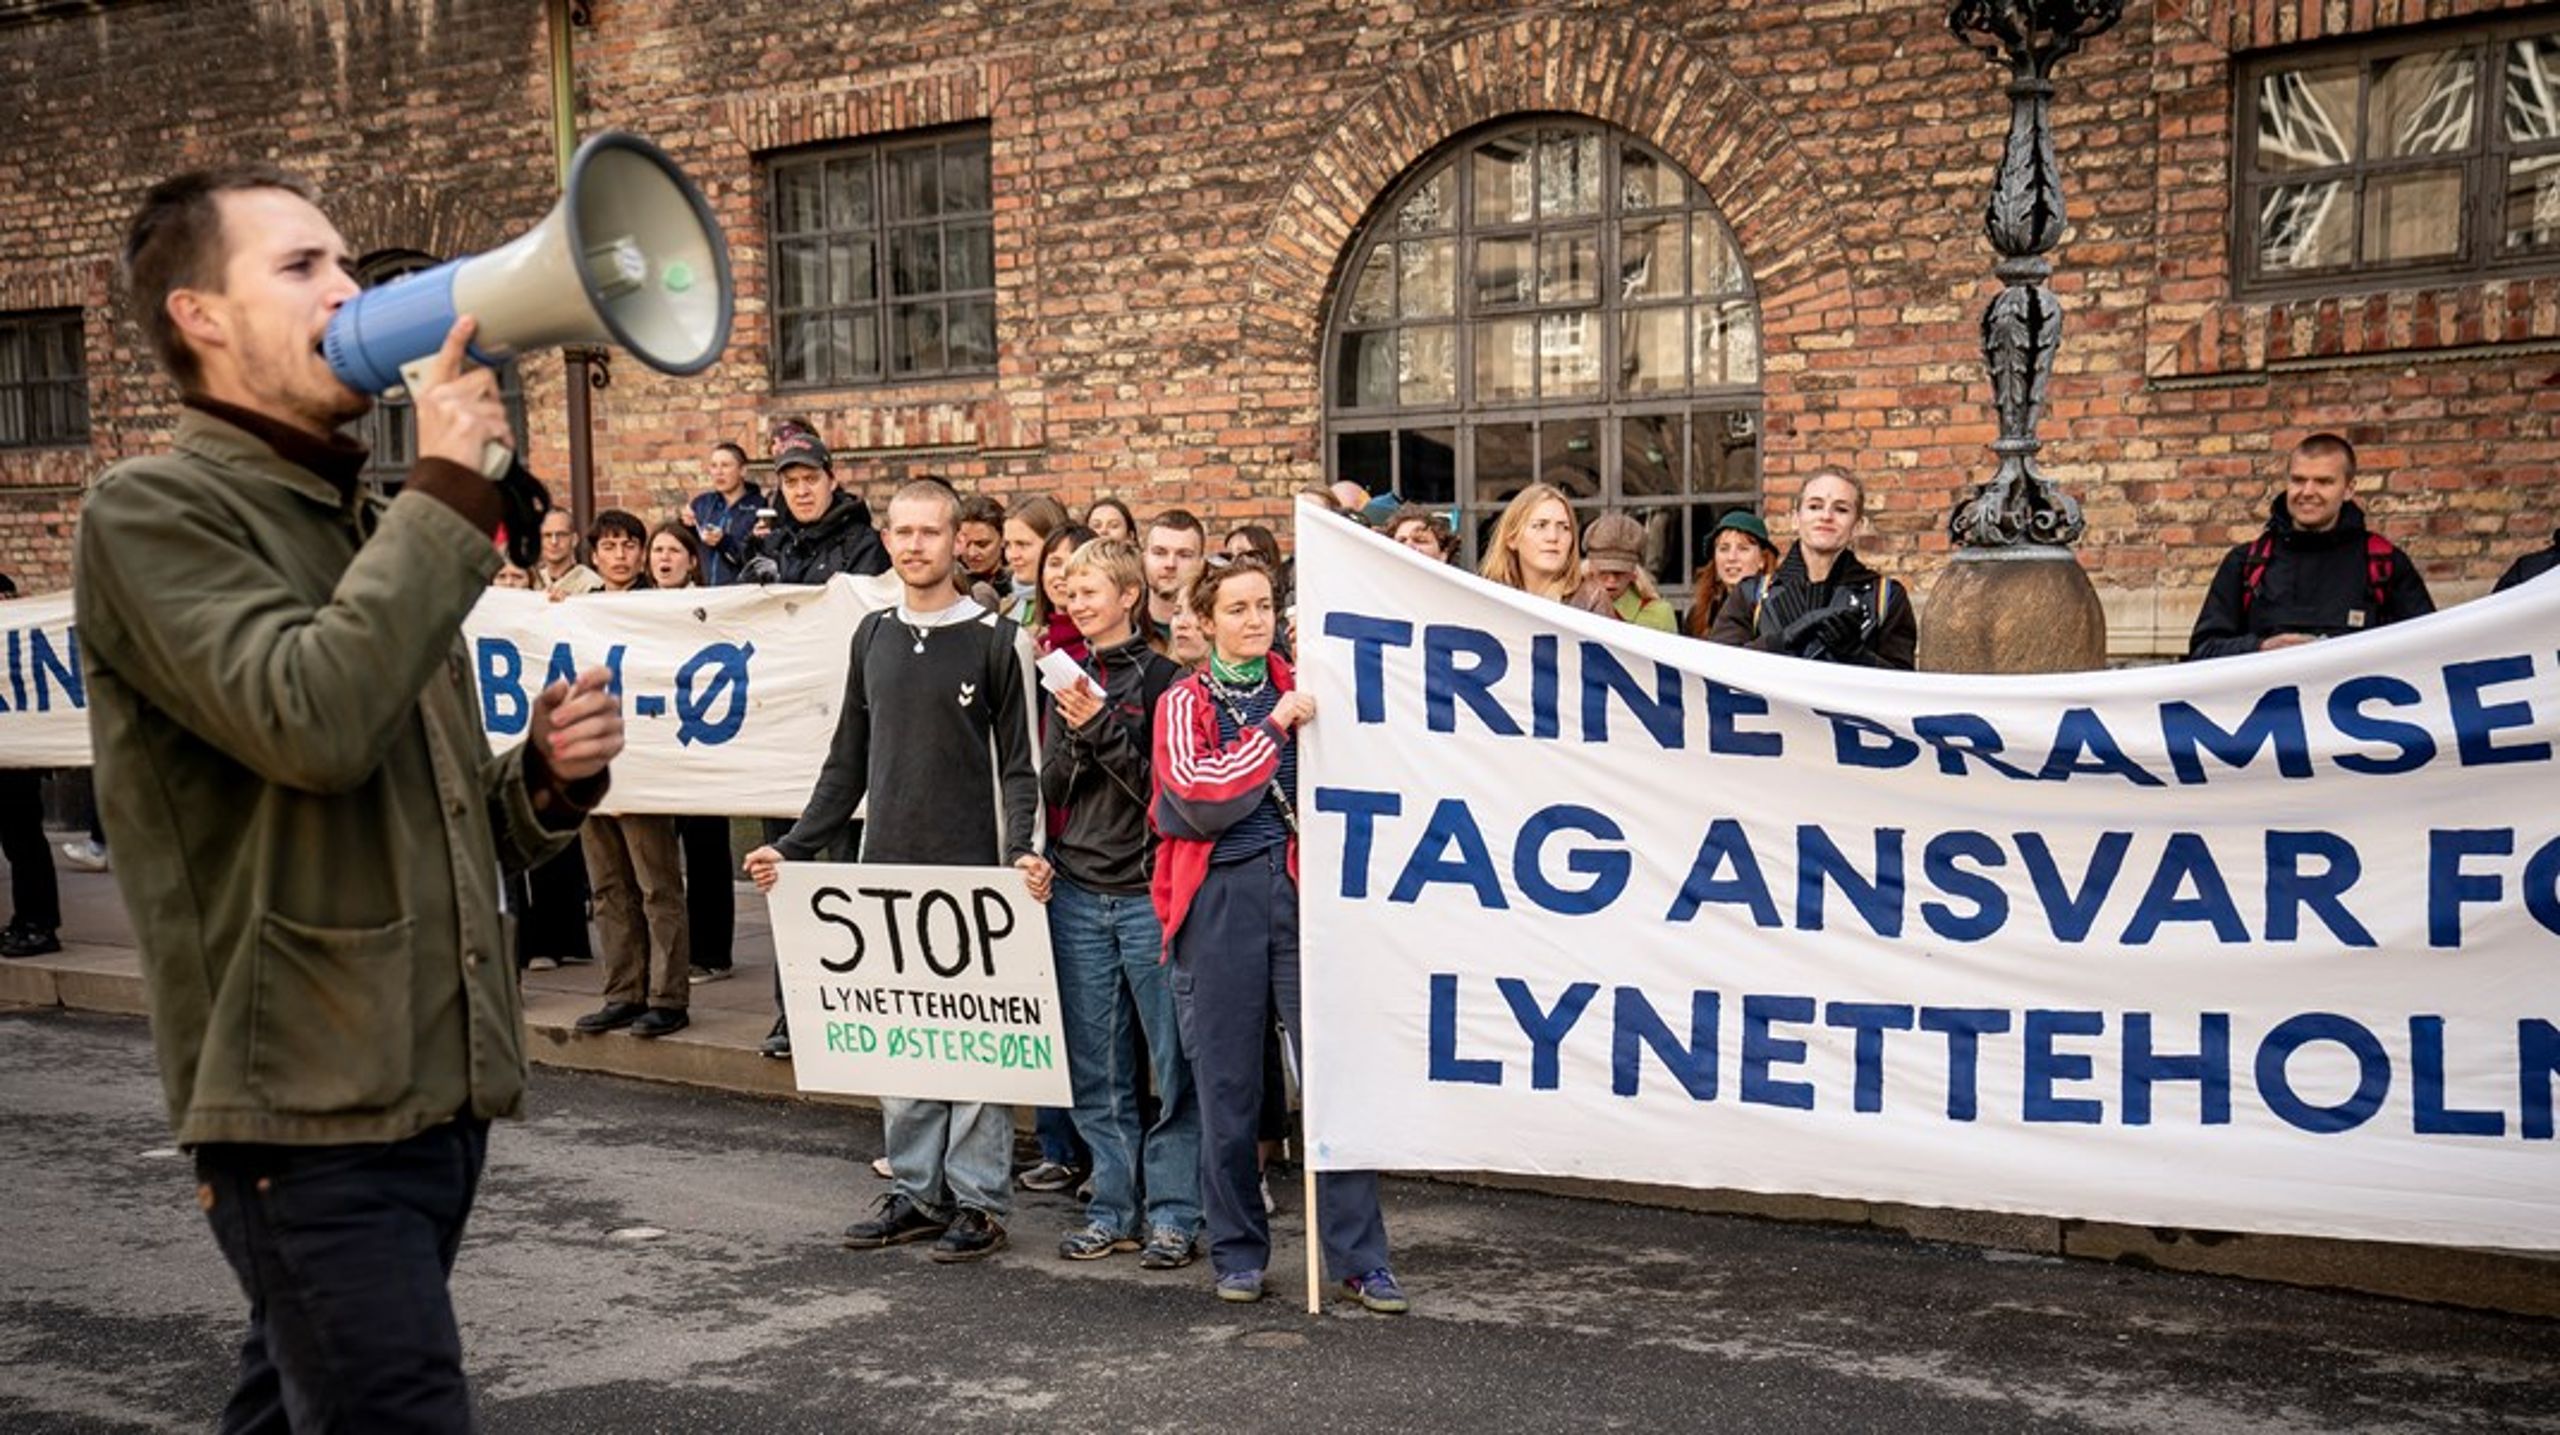 Fremover
kan borgere i Københavns Kommune,&nbsp;udover at demonstrere, benytte sig af Københavnerforslag til at få indflydelse på den førte politik.<br>